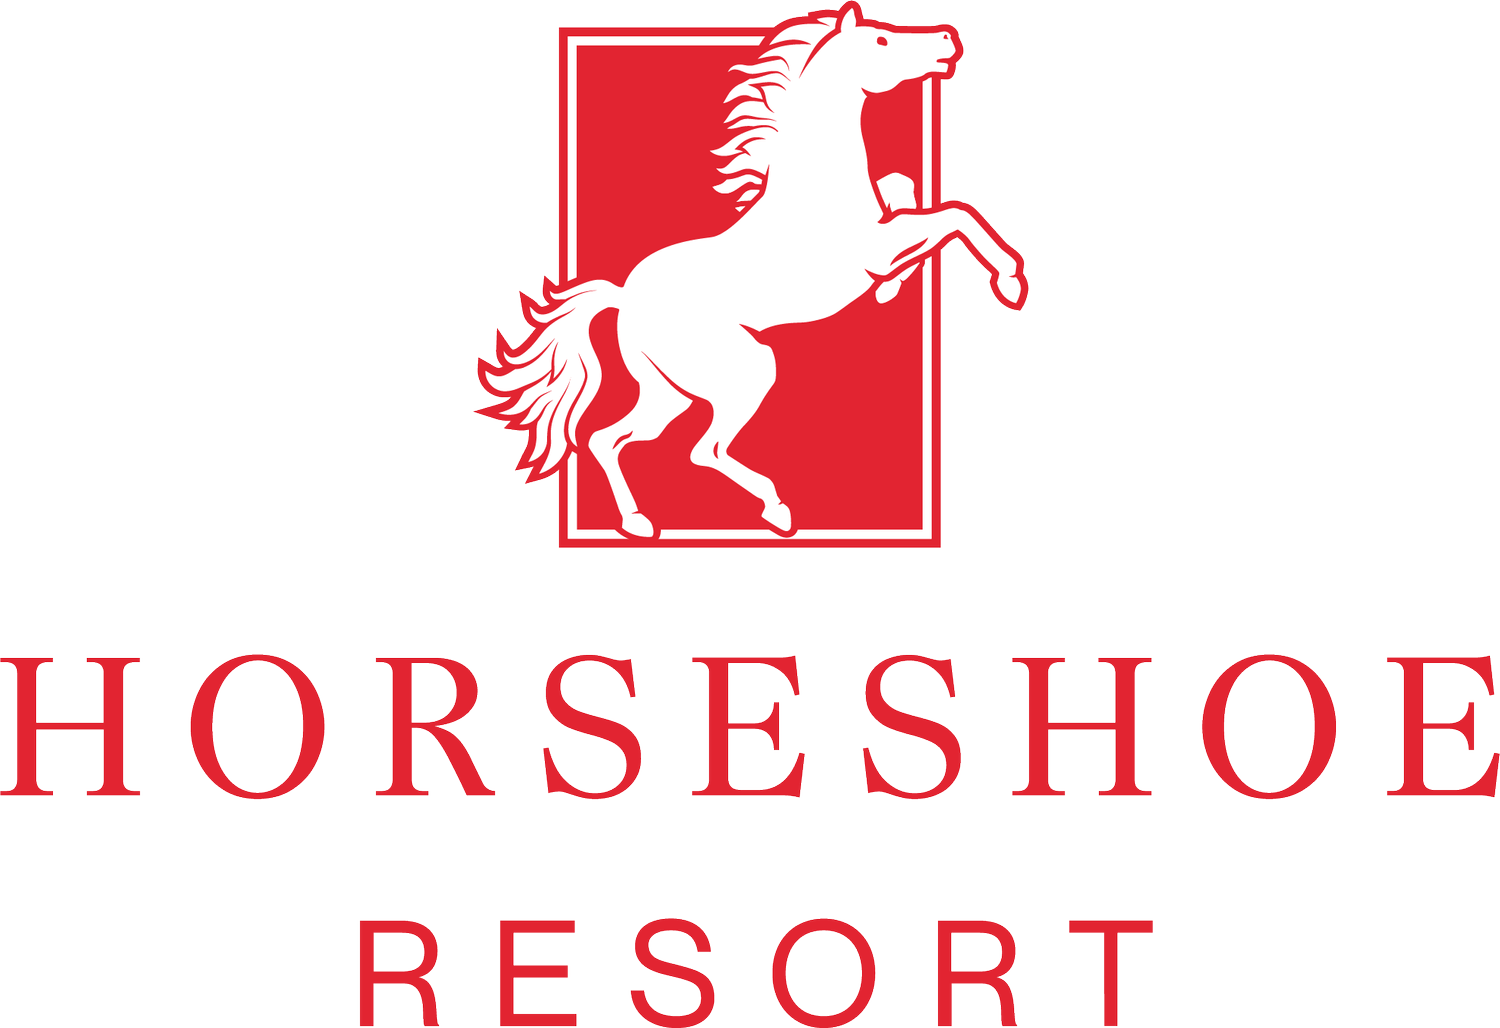 Horseshoe Residences